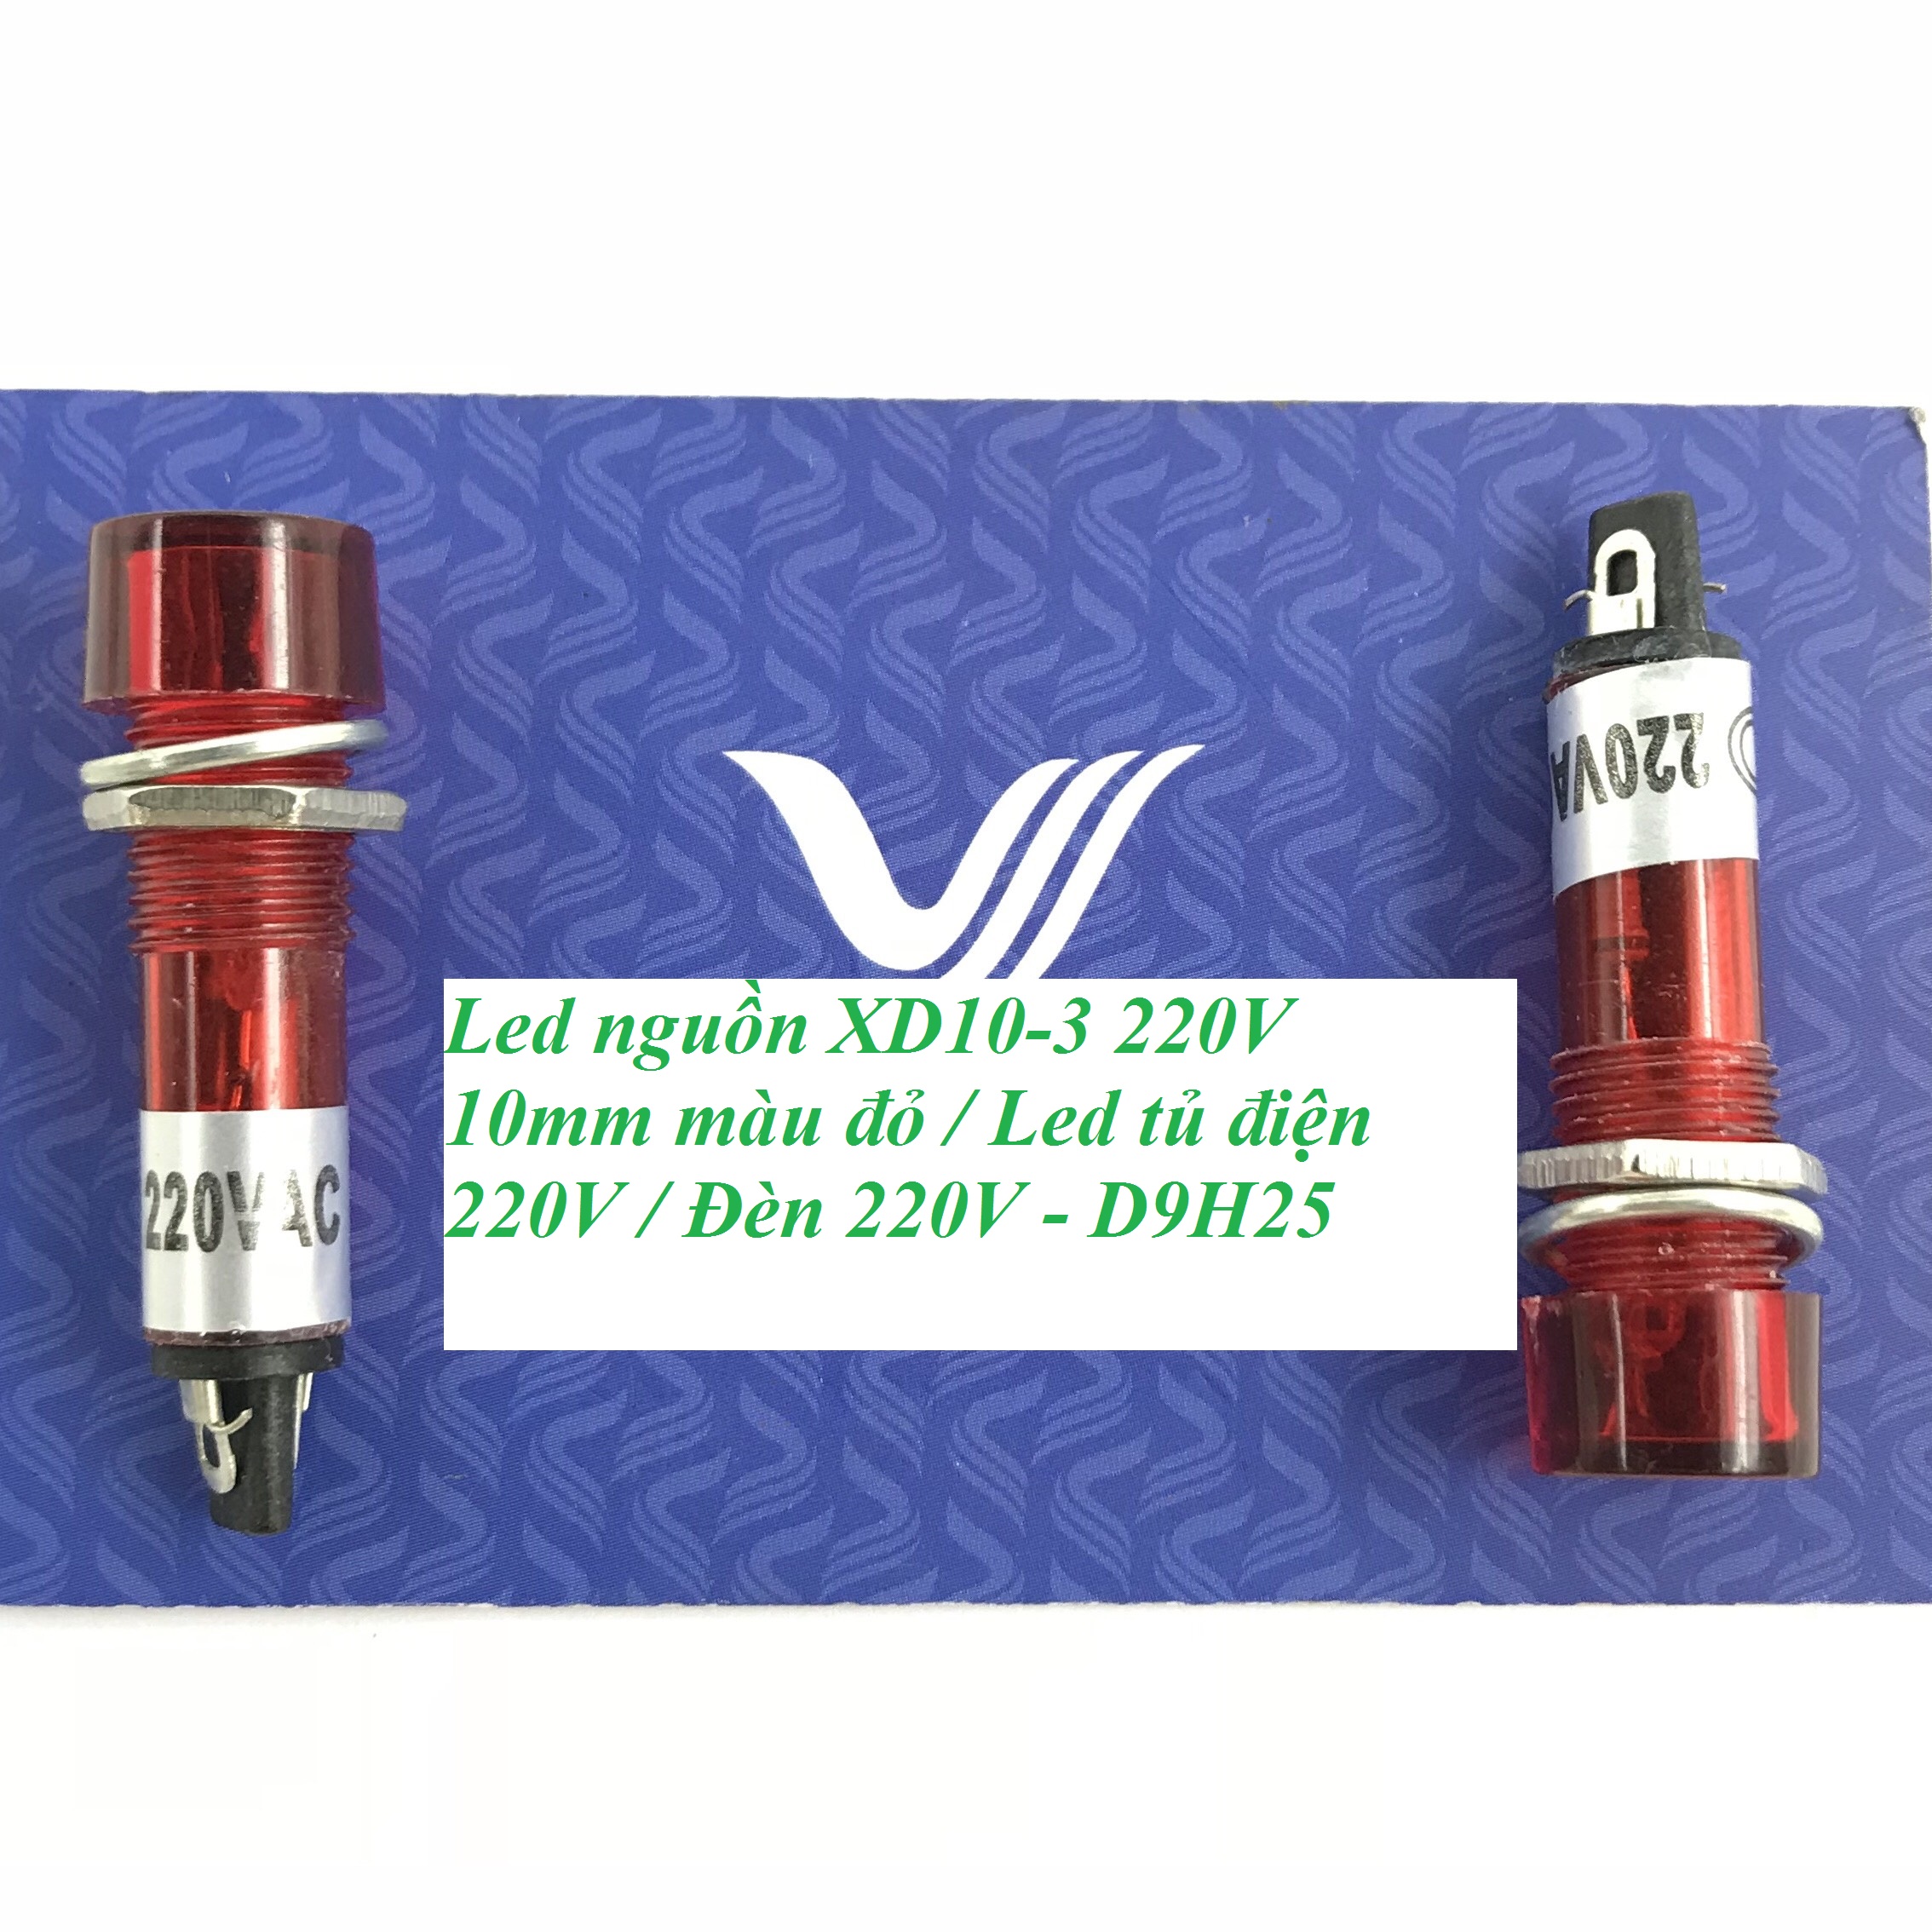 Led nguồn XD10-3 220V 10mm màu đỏ / Led tủ điện 220V / Đèn 220V - D9H25